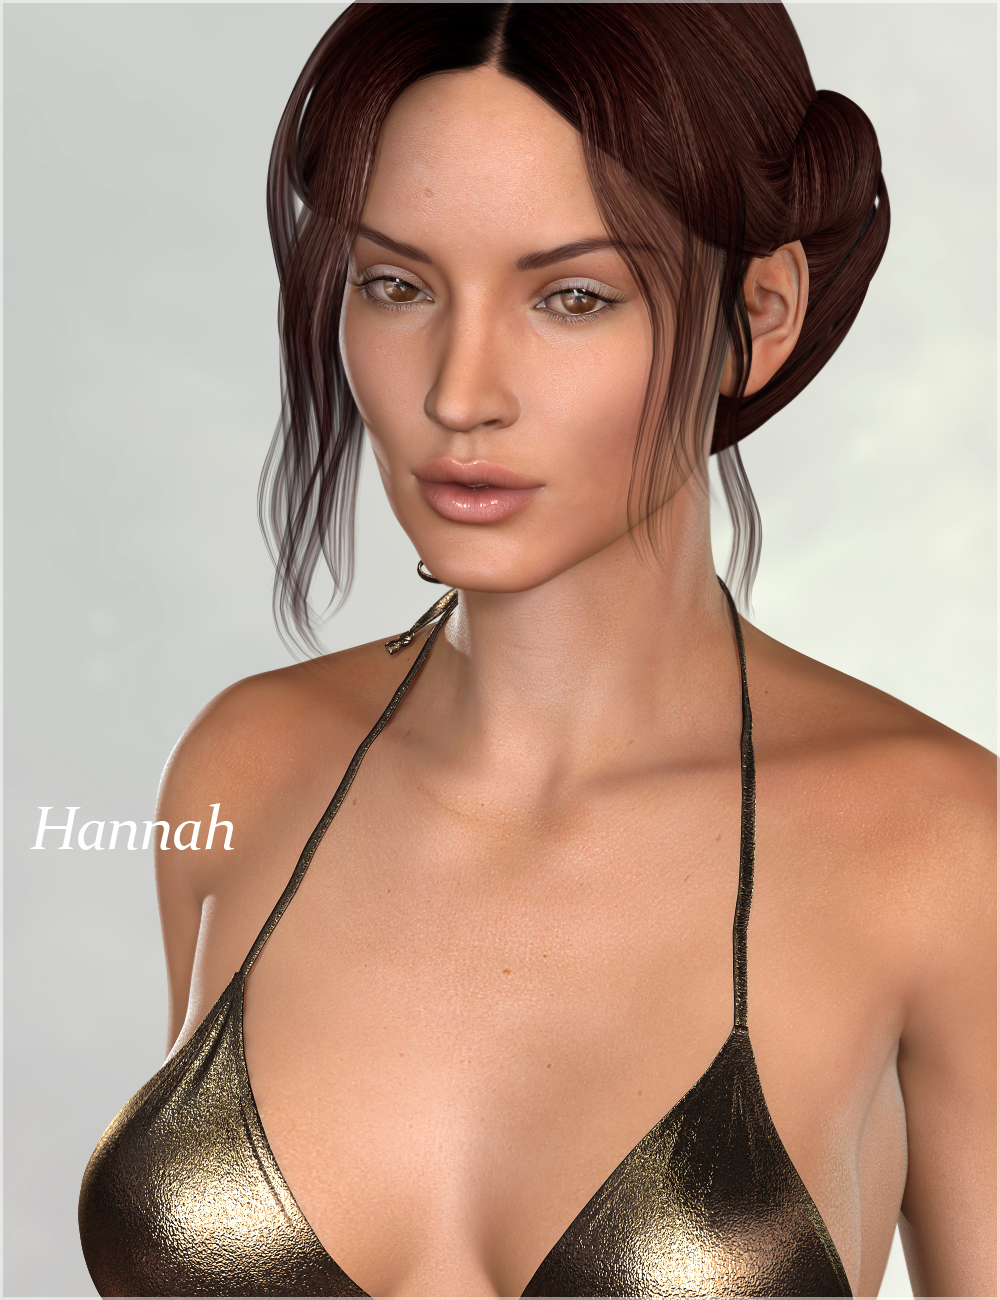 Hannah HD for Victoria 6 by: Raiya, 3D Models by Daz 3D